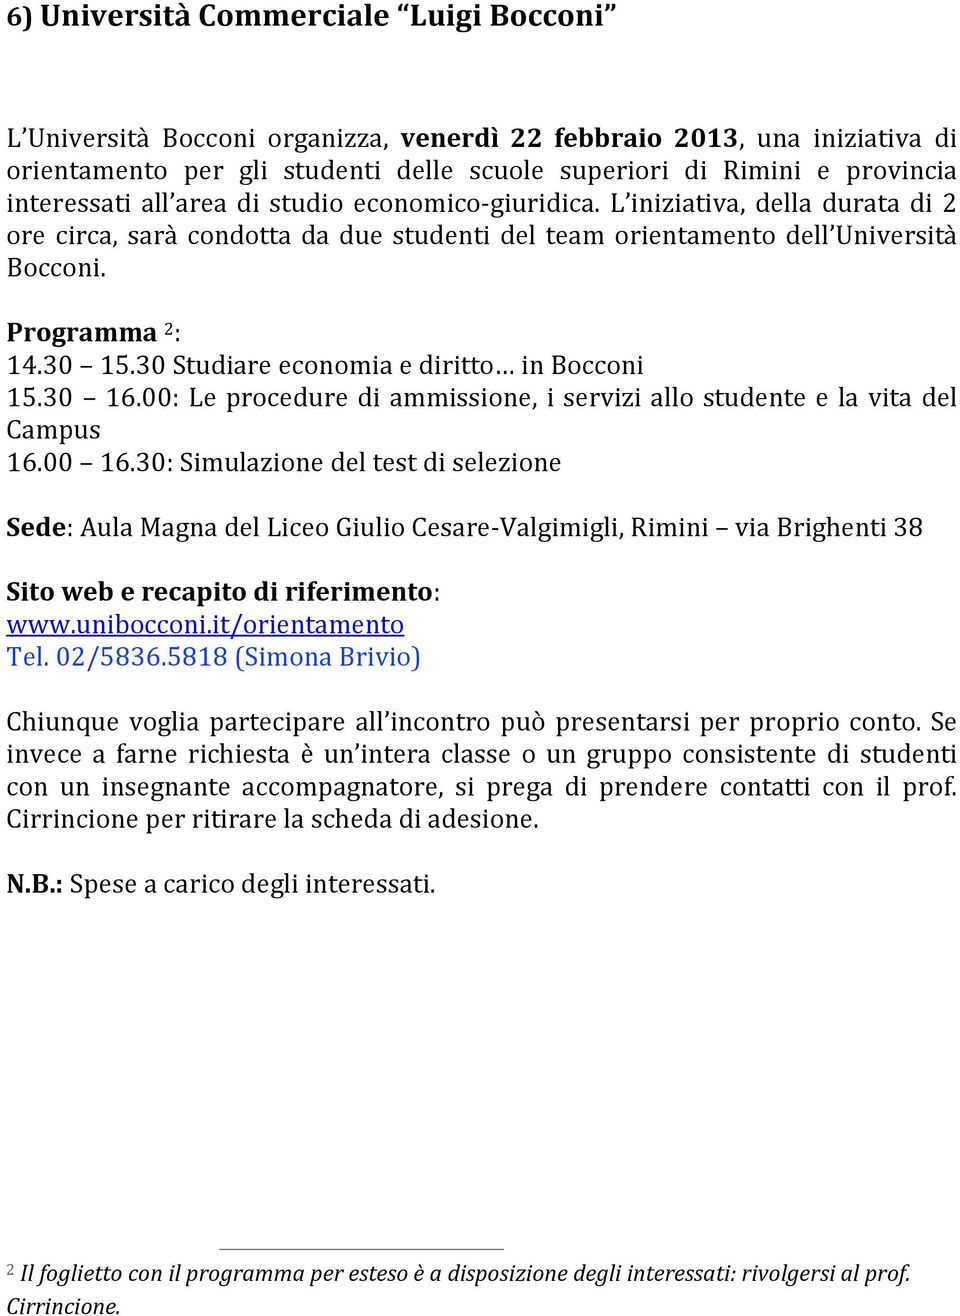 30 Studiare economia e diritto in Bocconi 15.30 16.00: Le procedure di ammissione, i servizi allo studente e la vita del Campus 16.00 16.